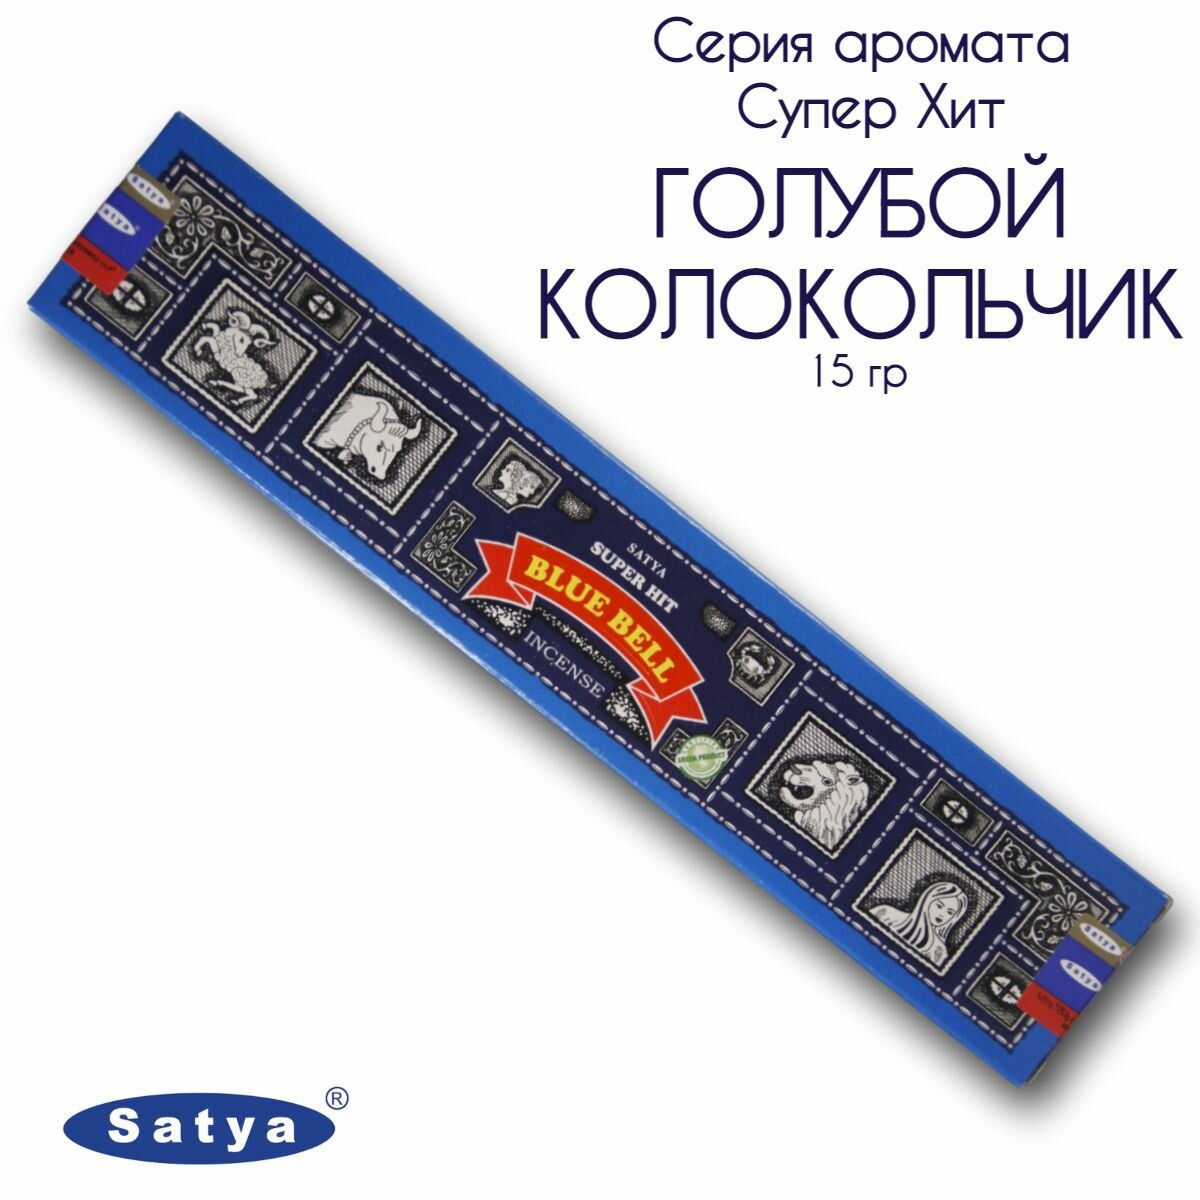 Satya Голубой колокольчик серия Супер Хит - 15 гр, ароматические благовония, палочки, Super Hit Series Blue bell - Сатия, Сатья